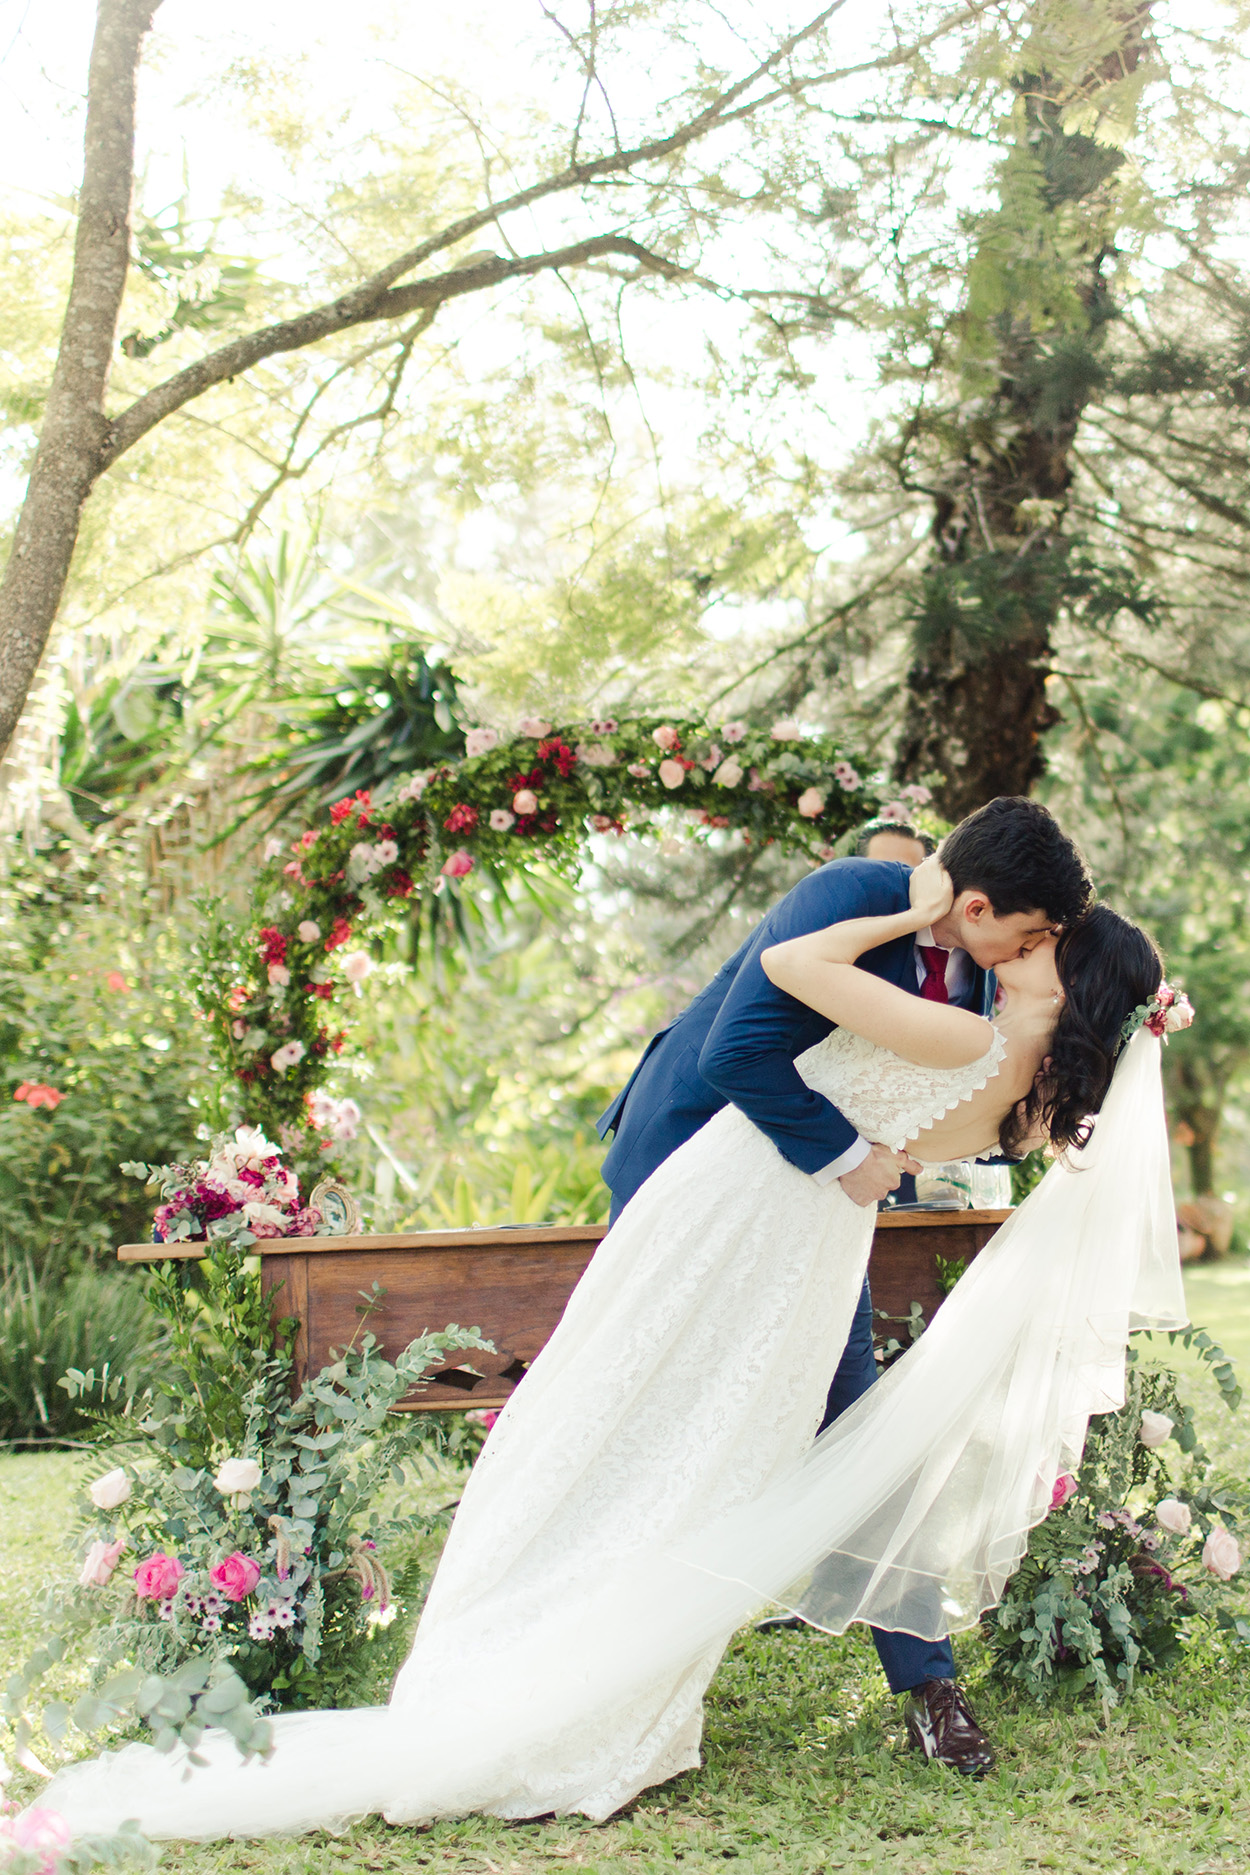 Noivos se beijando perto do altar florido